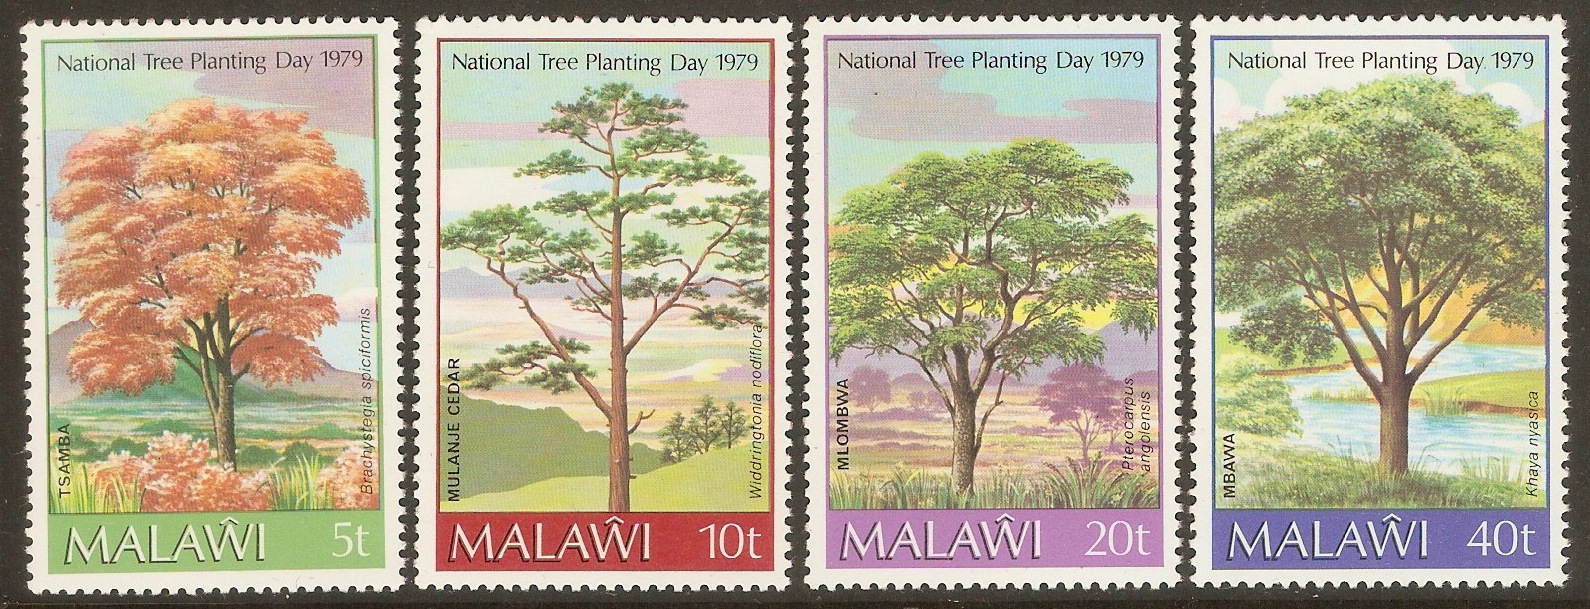 Malawi 1979 Tree Planting set. SG592-SG595.